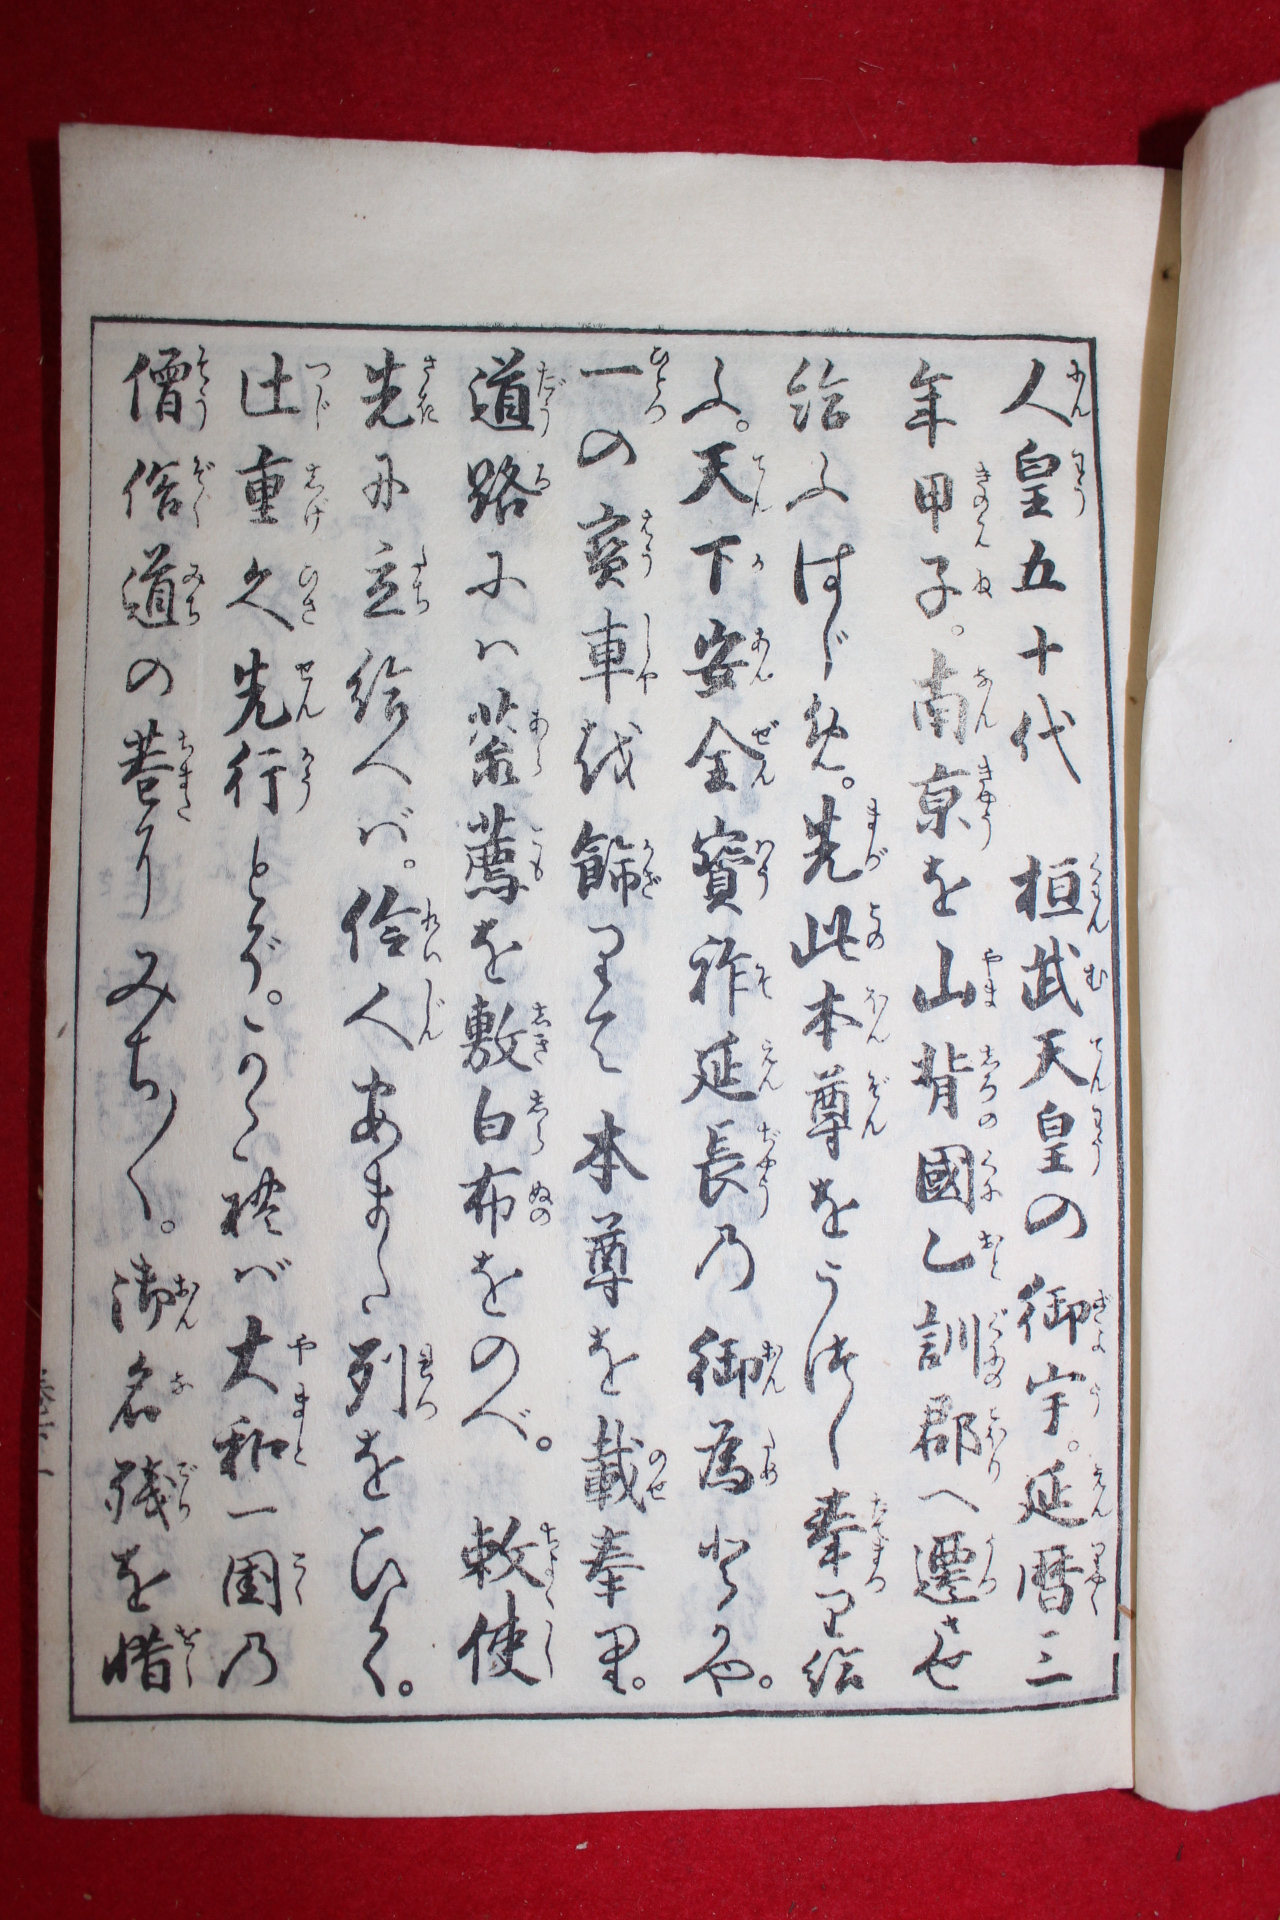 1792년(寬政4年) 목판본불경 서원사록기(誓願寺錄起) 상하 2책완질